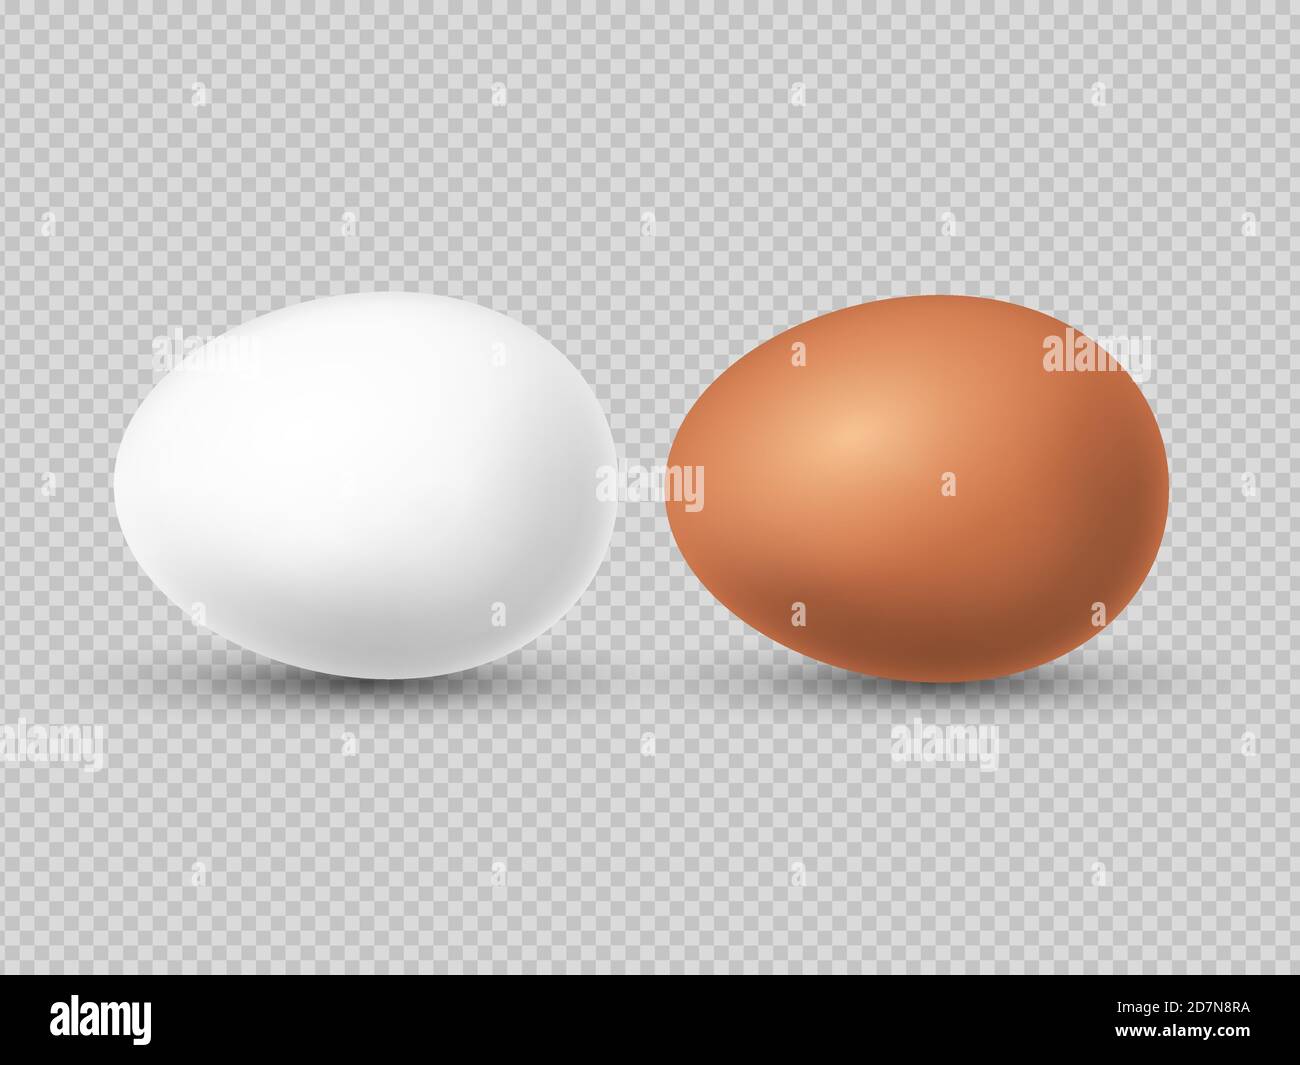 Illustrazione vettoriale realistica delle uova di pollo bianche e marroni. Uova di pollo per pasqua e mangiare Illustrazione Vettoriale